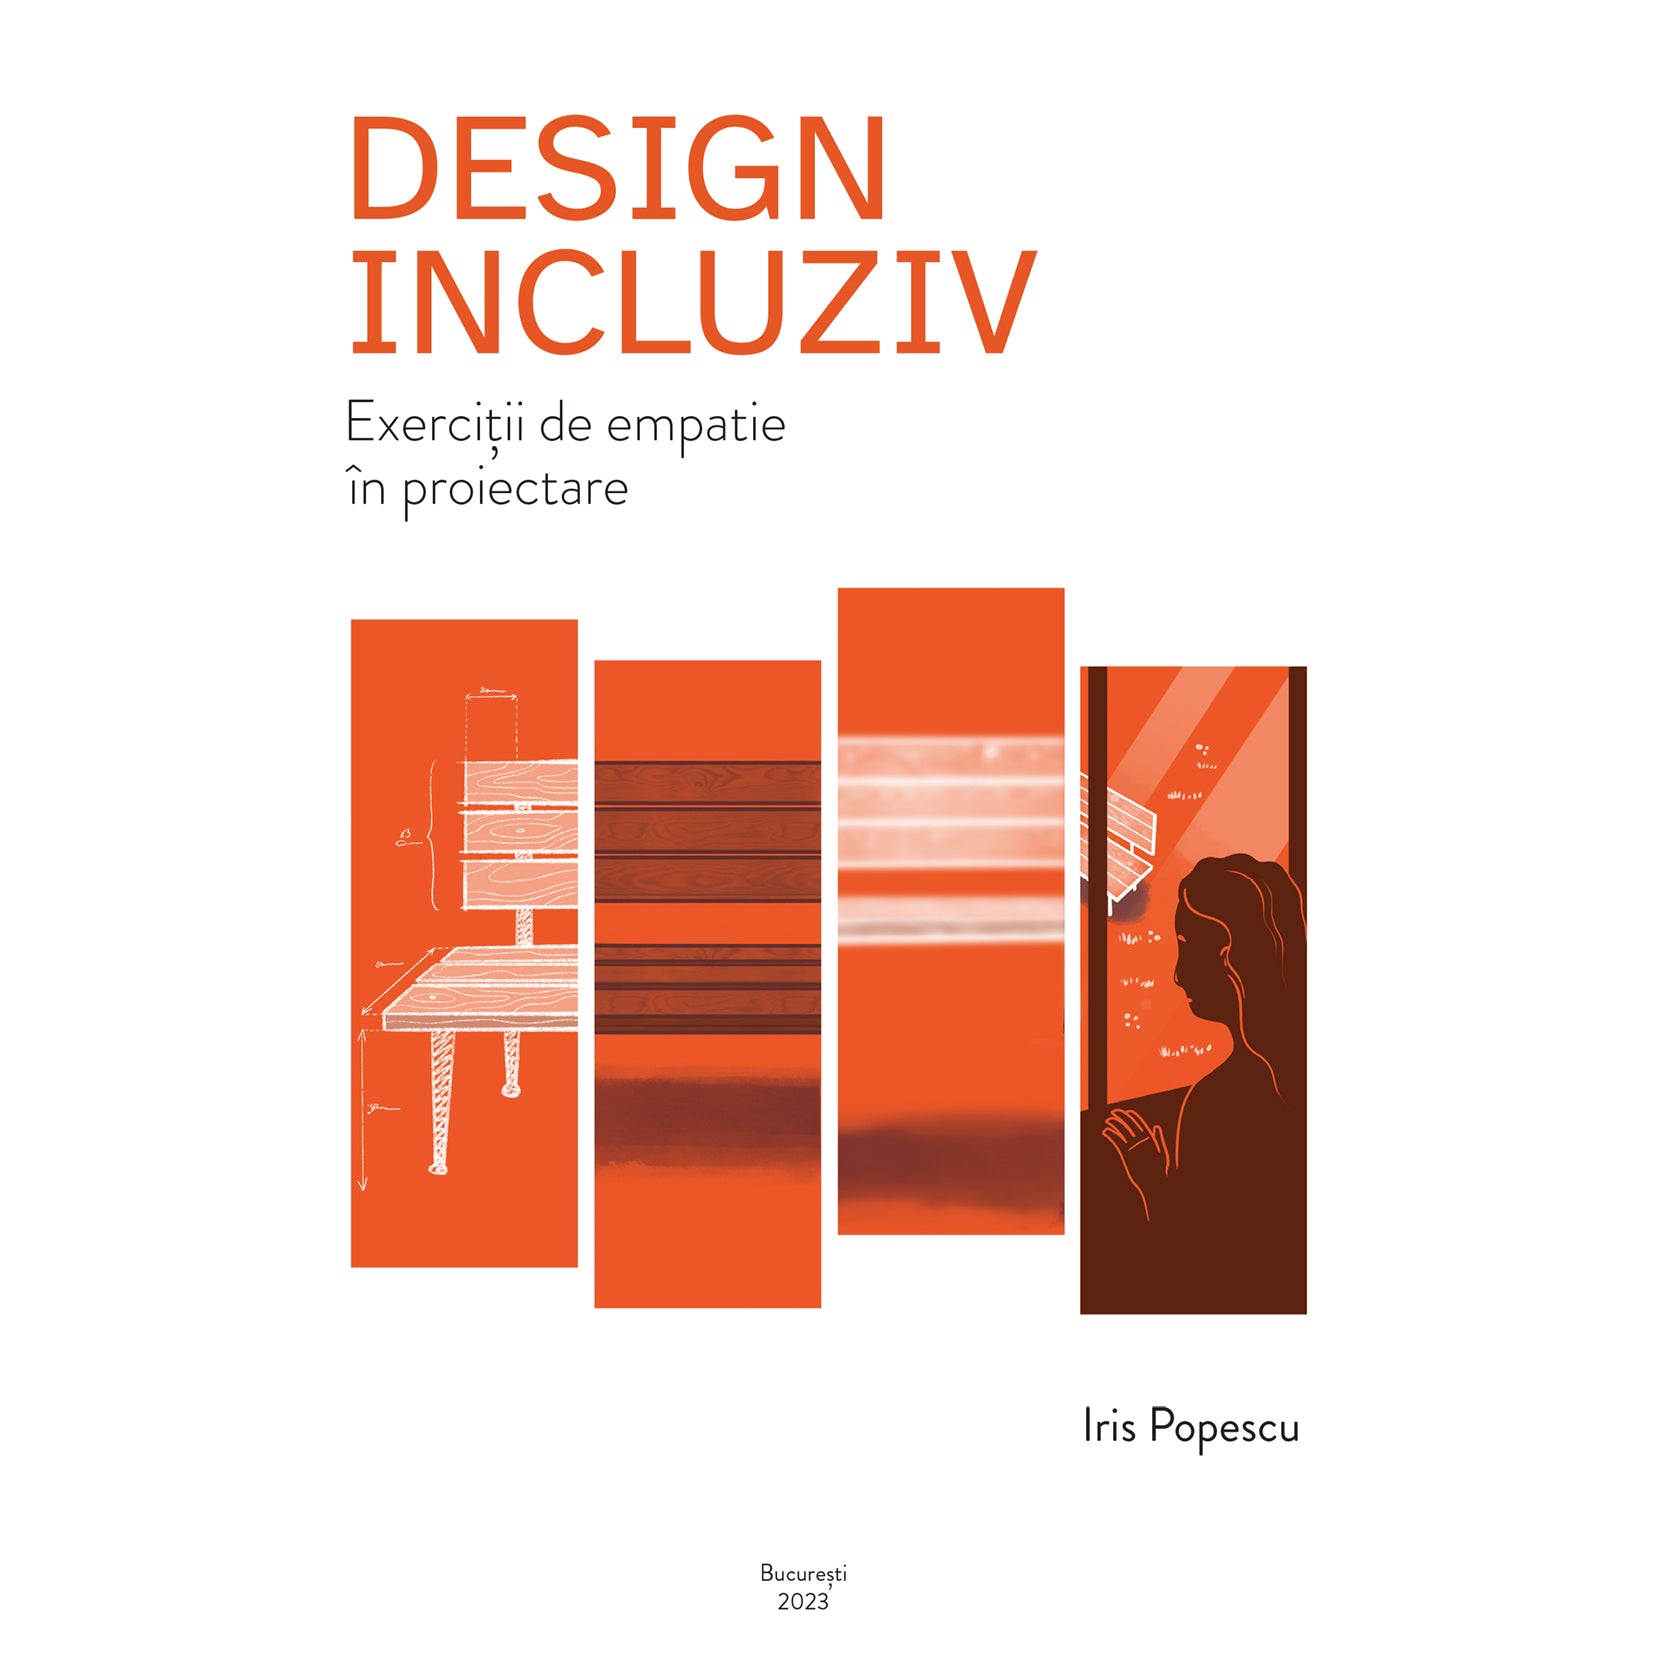 Design incluziv: exerciții de empatie în proiectare